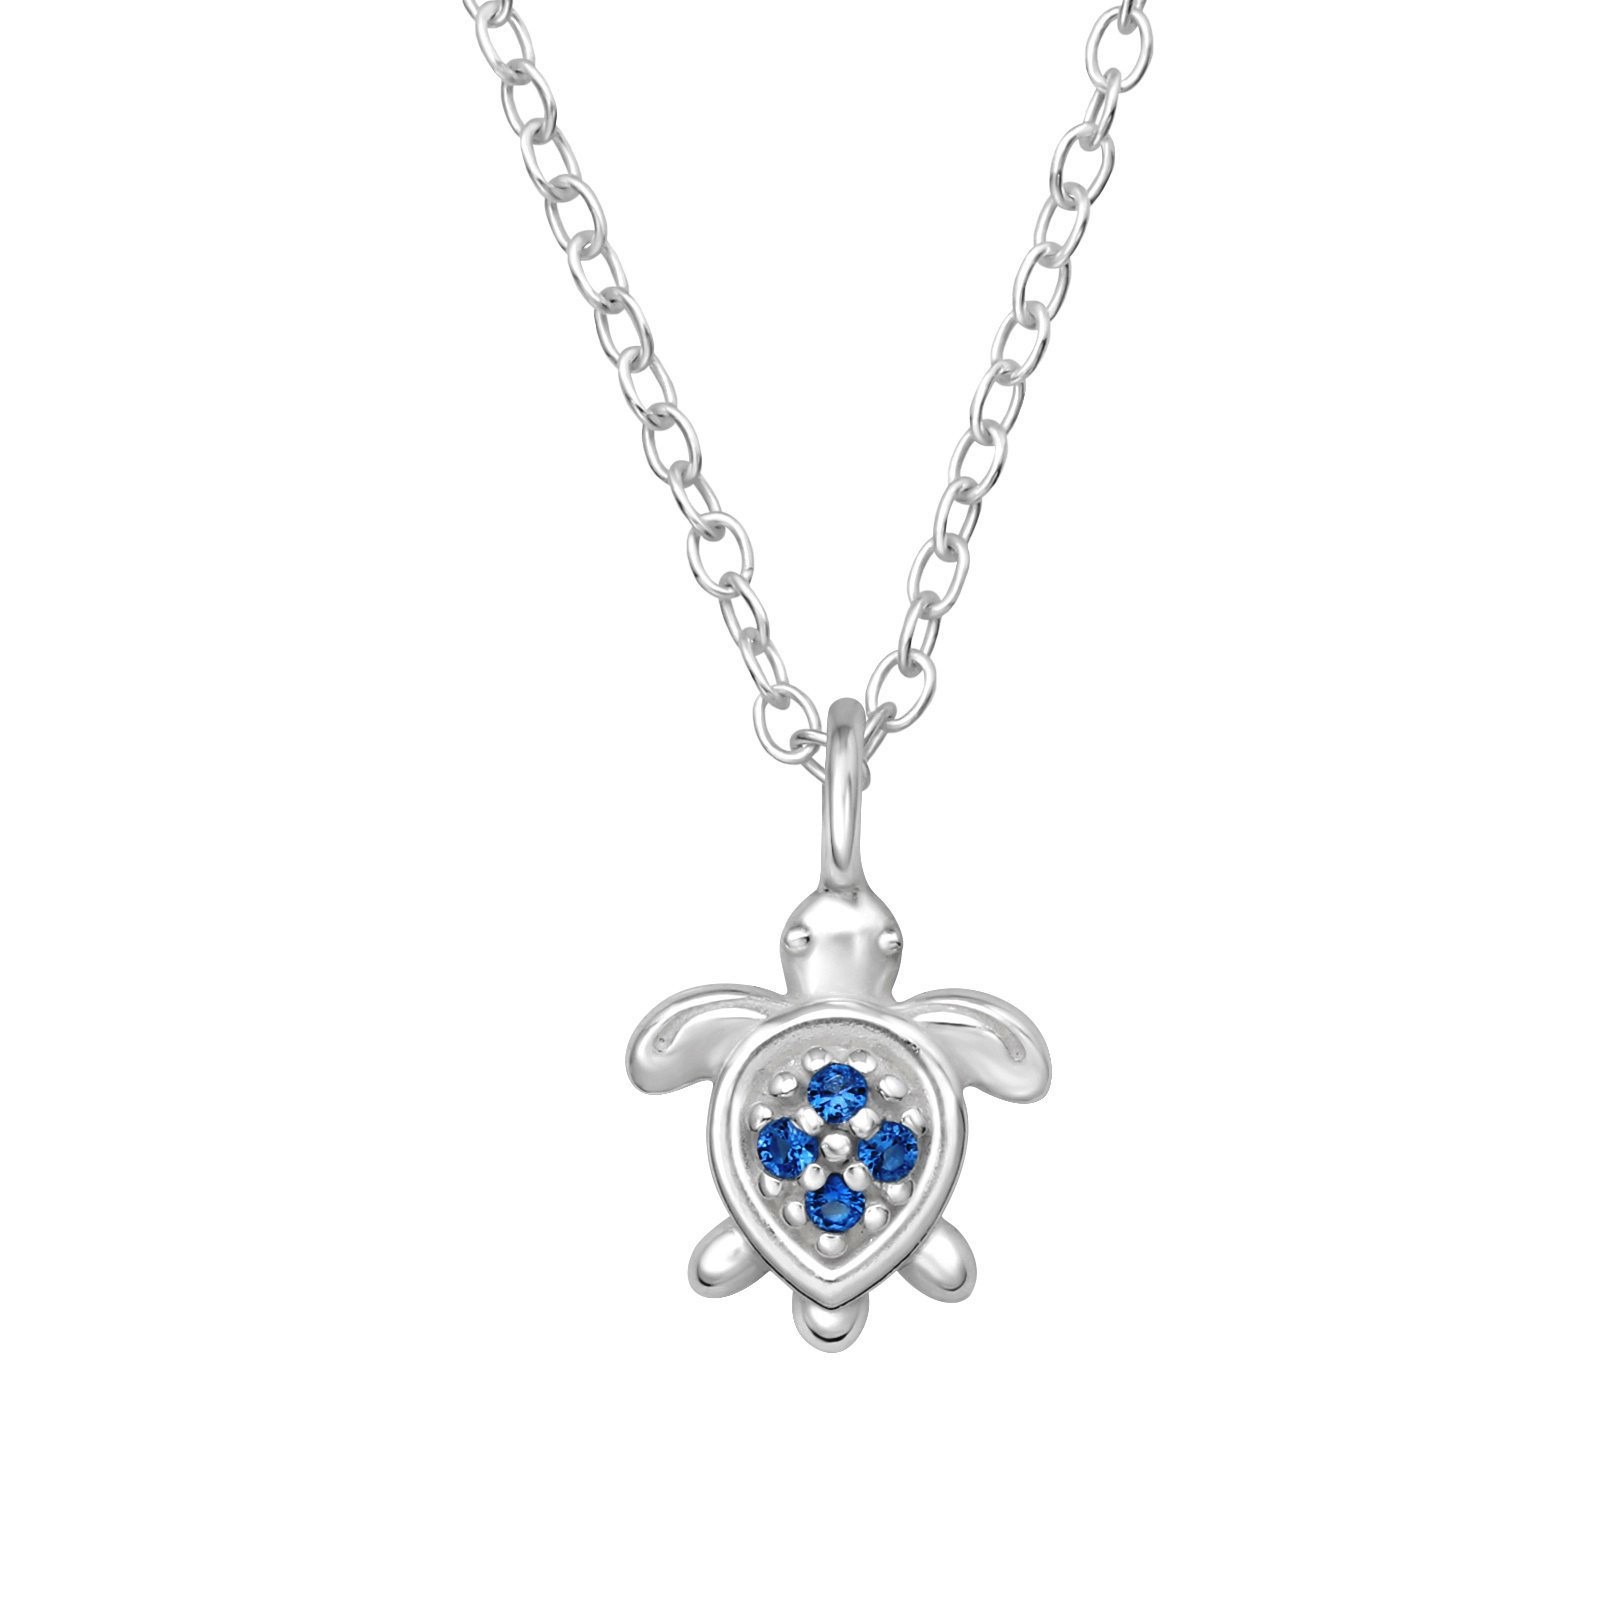 Barnhalsband Sköldpadda blå stenar - sött halsband till barn i äkta 925 sterling silver